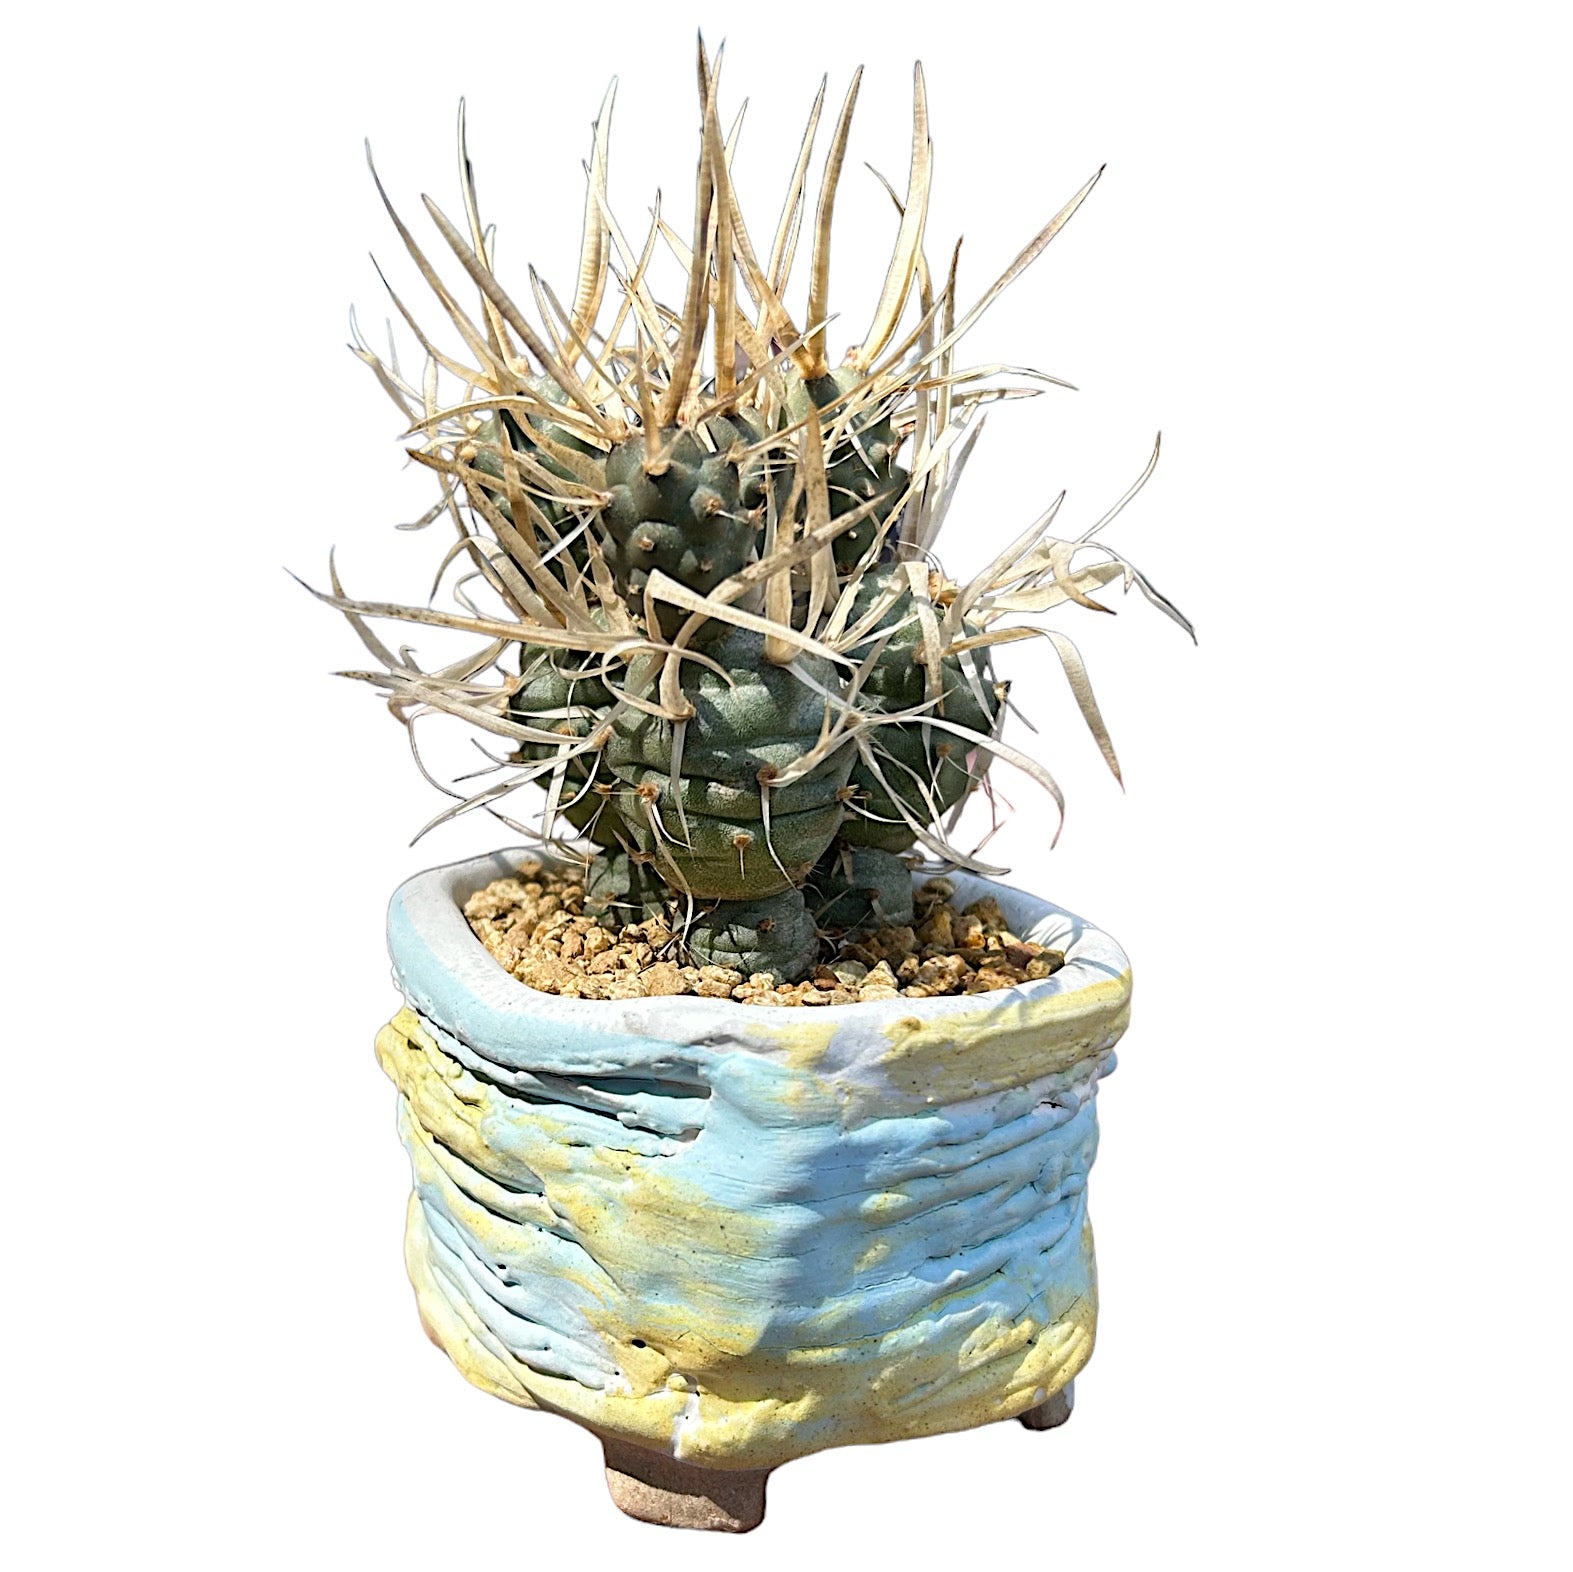 Paper Spine Cactus